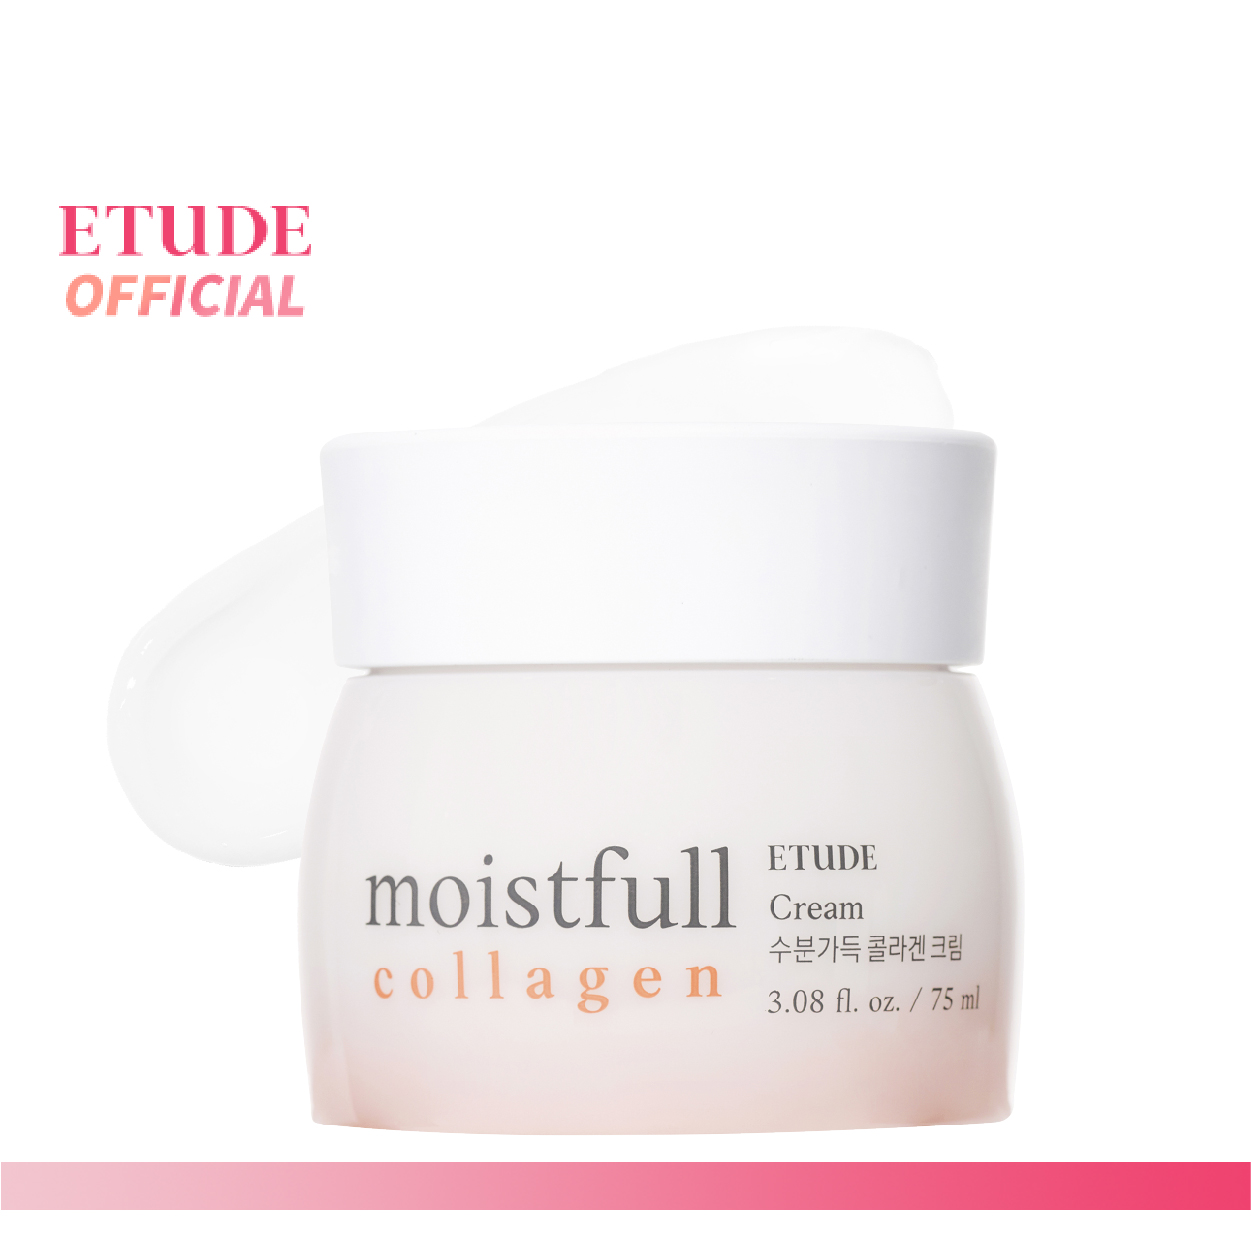 ซื้อที่ไหน ETUDE Moistfull Collagen Cream (75 ml) อีทูดี้ ครีม